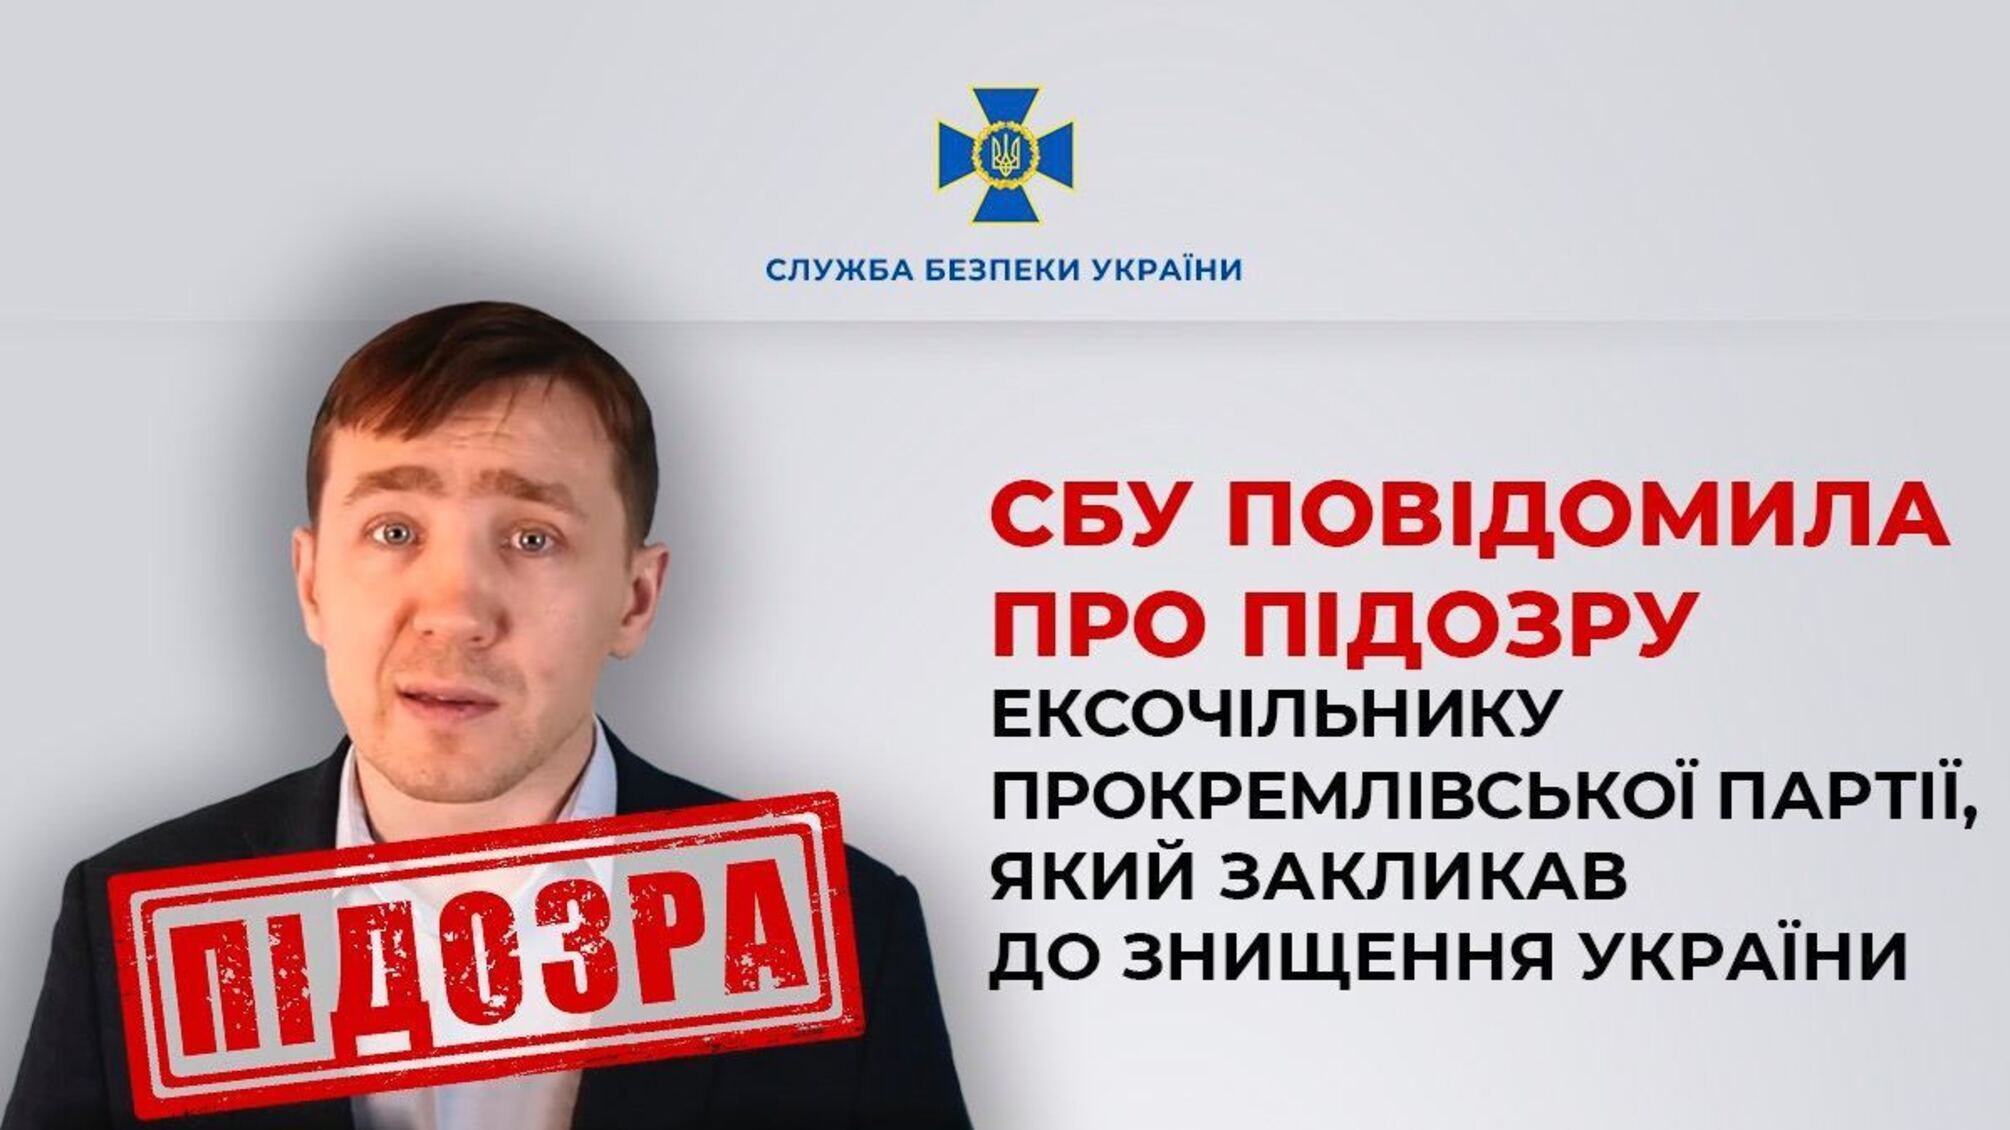 Российский блогер Василец получил подозрение после призывов о захвате Украины